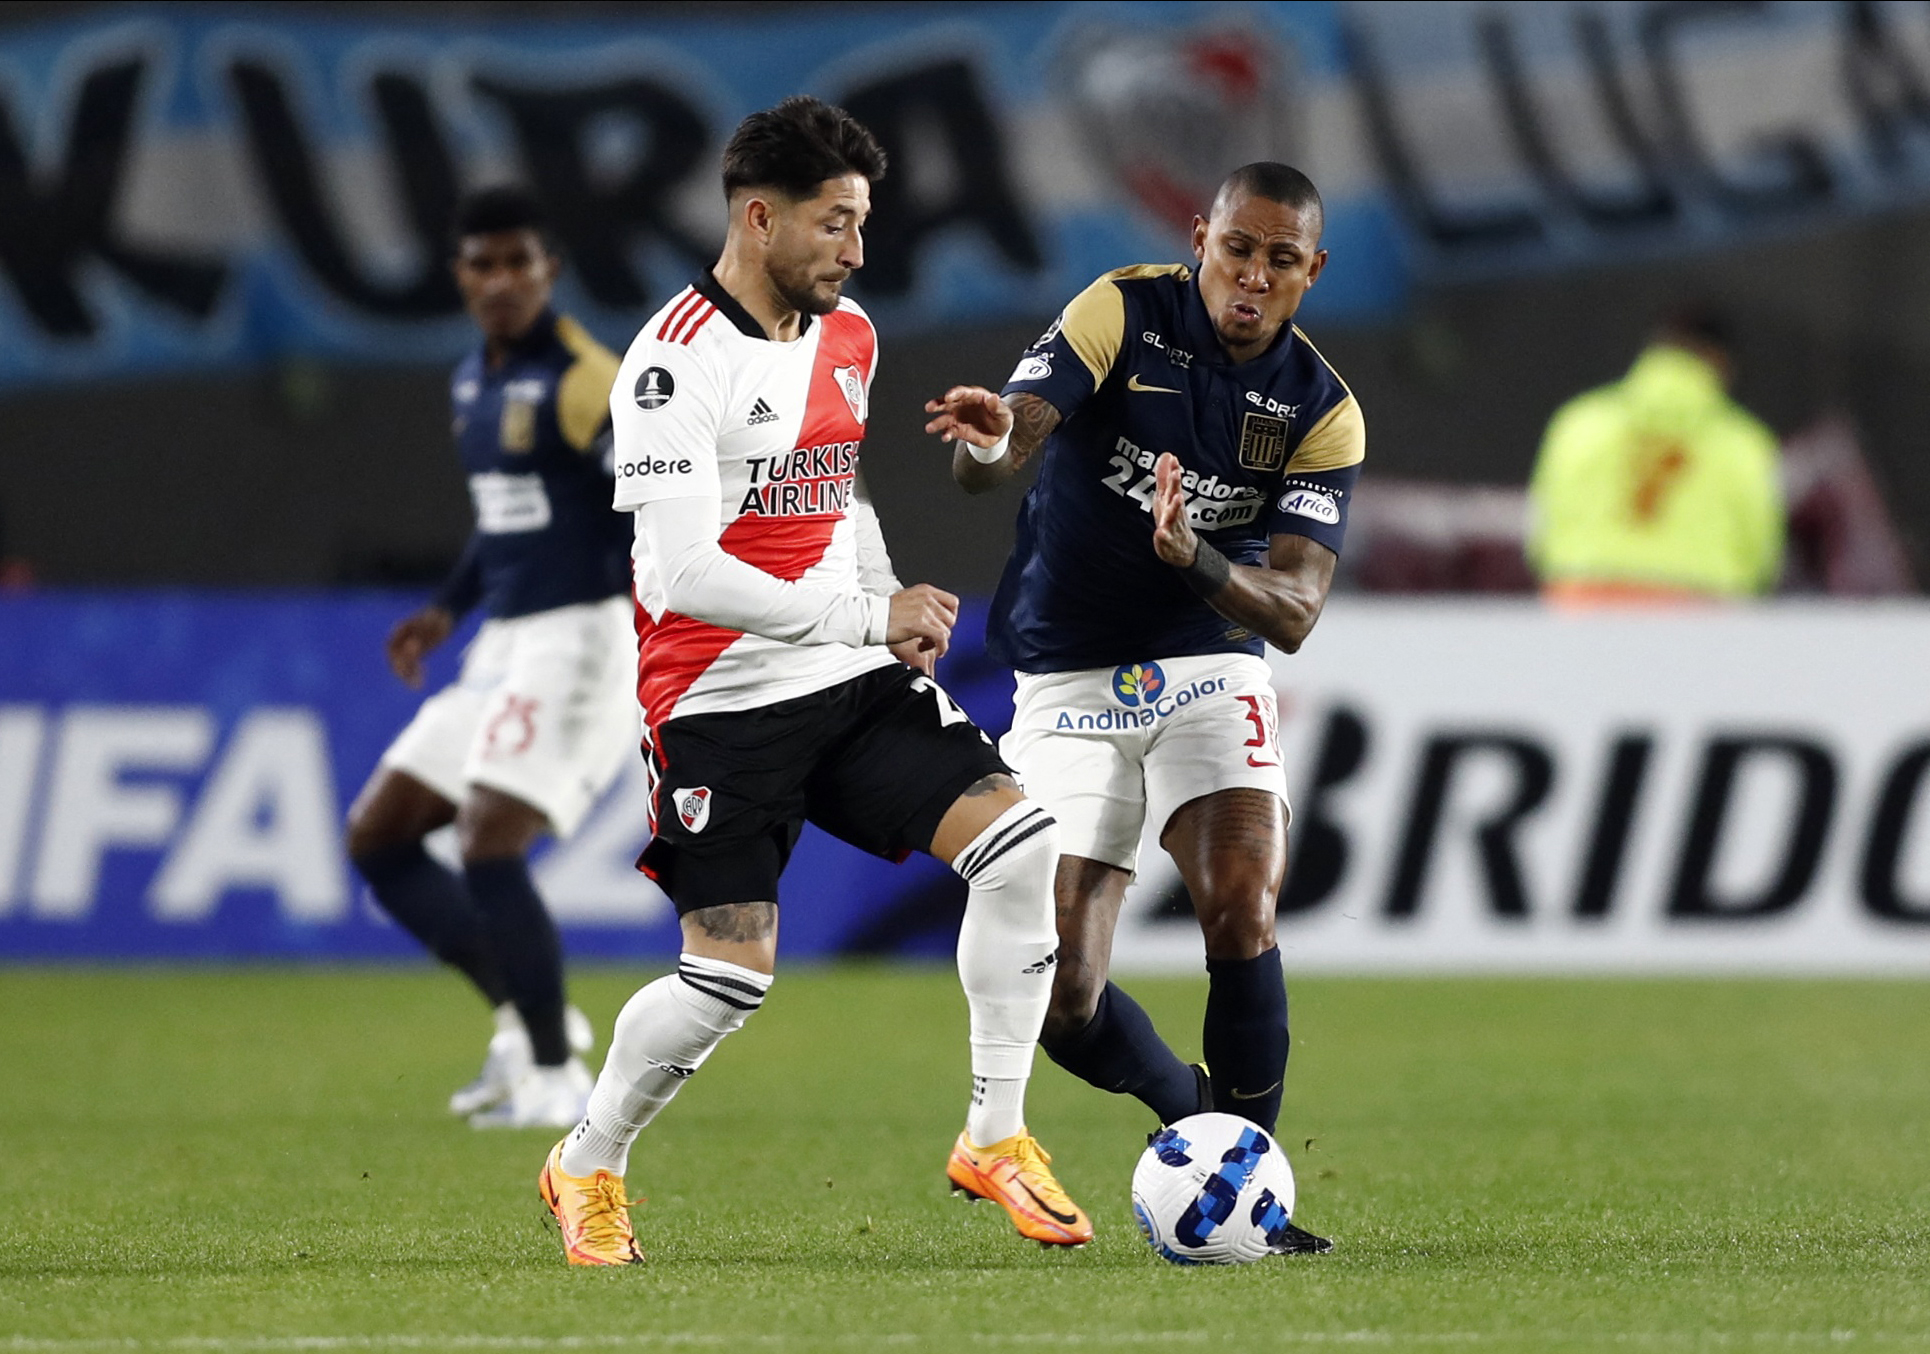 Milton Casco enfrenta la marca de Arley Rodriguez durante el partido entre River Plate y Alianaz Lima. El defensor argentino fue reemplazado a los 18' por lesión (REUTERS/Agustin Marcarian)